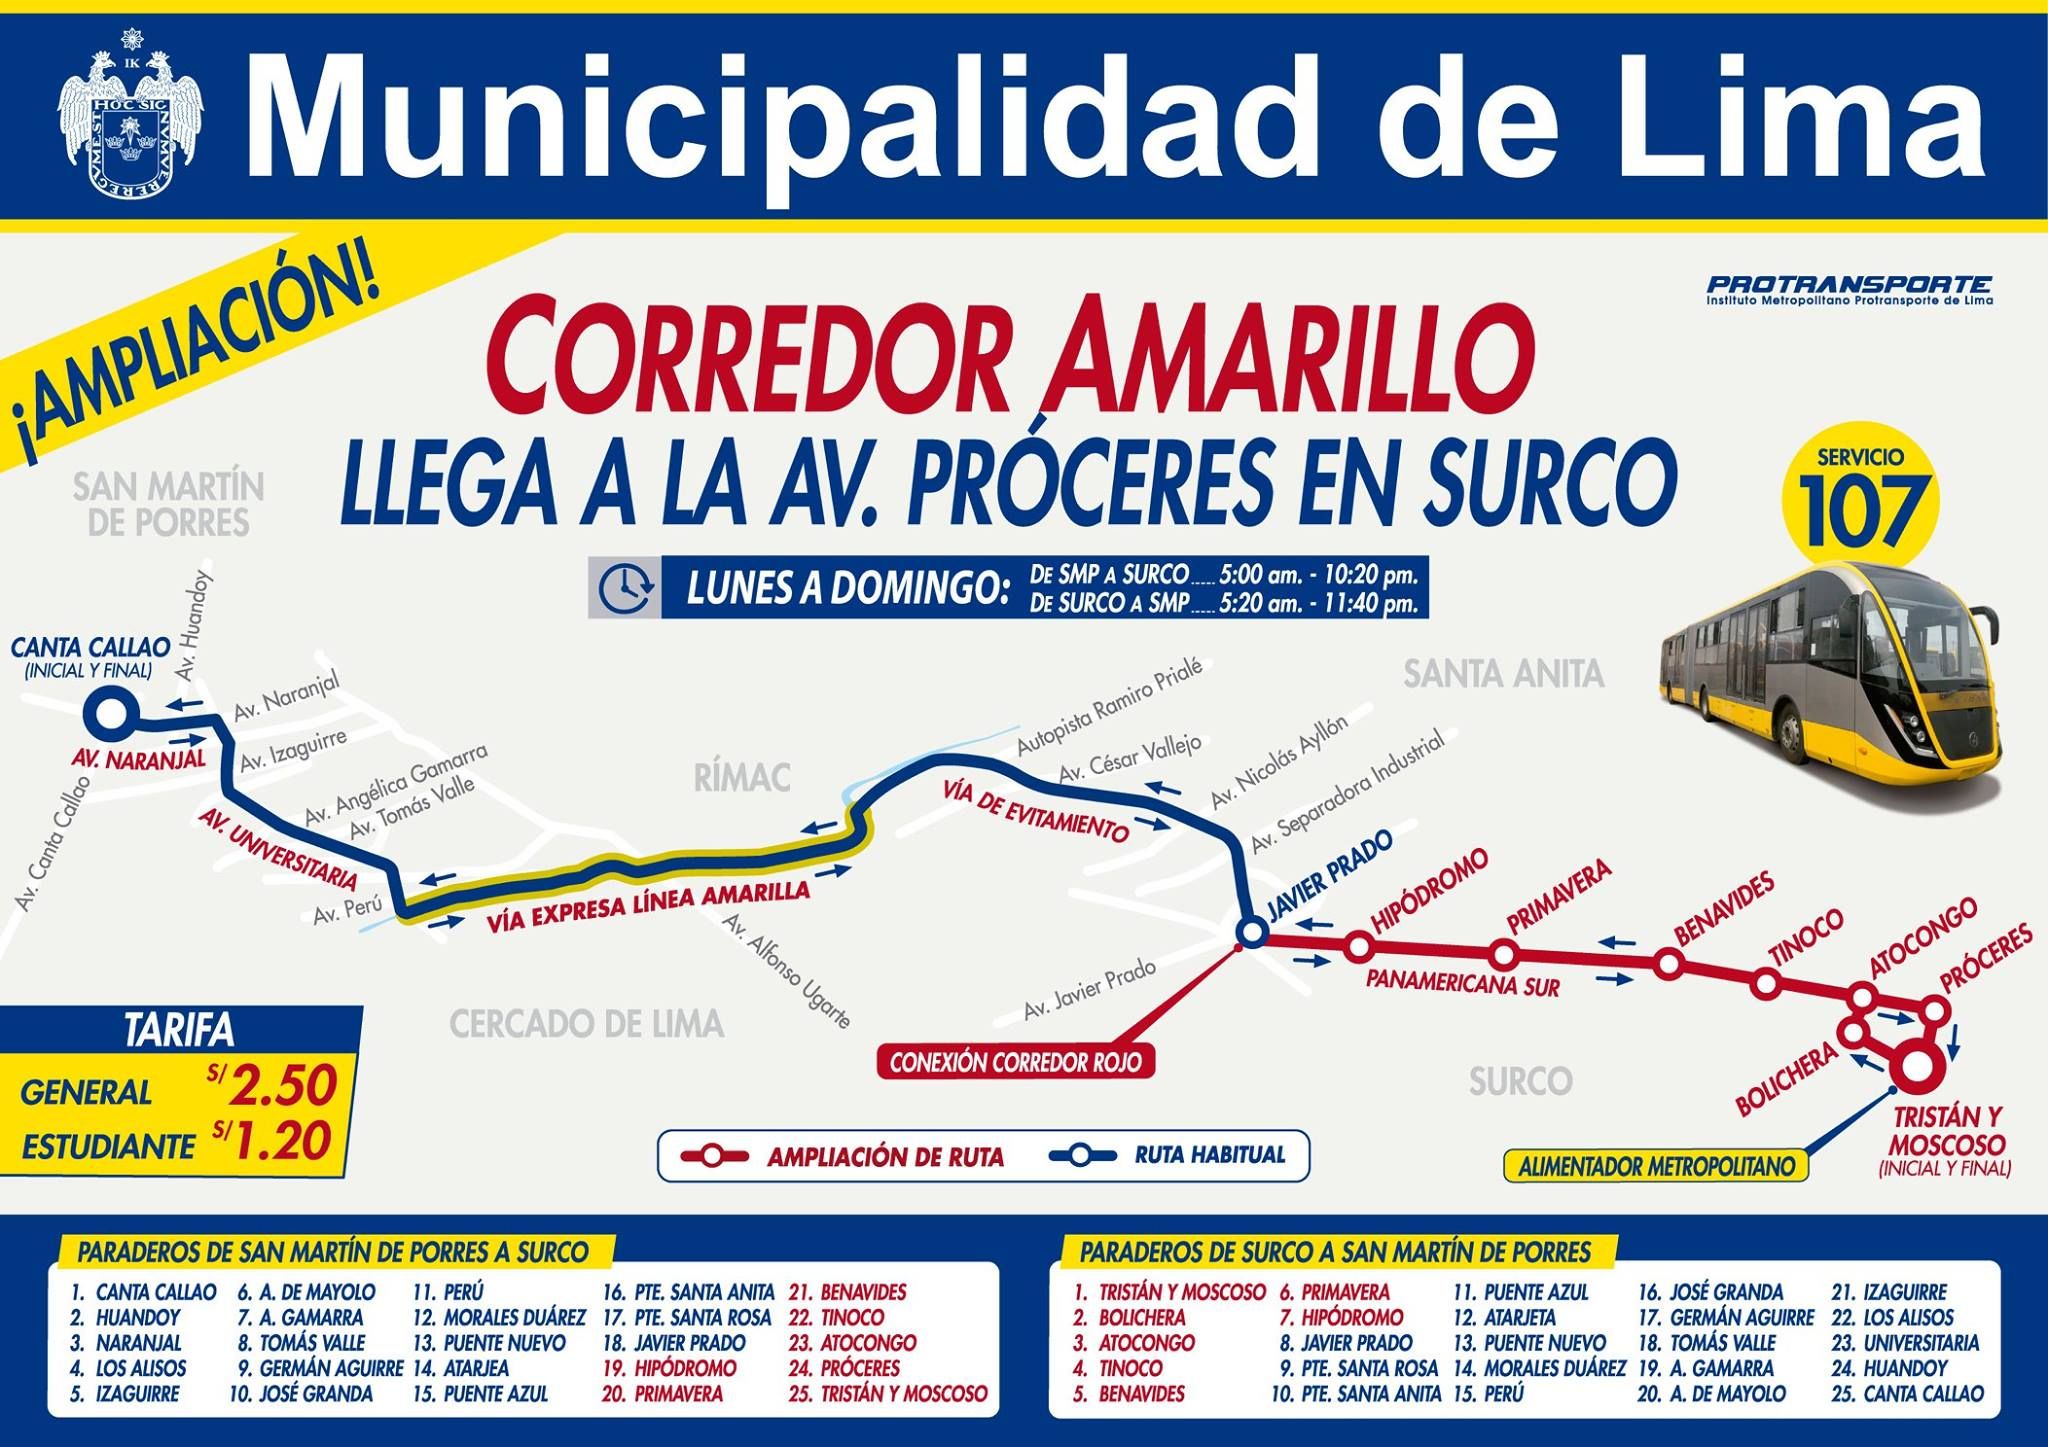 Los buses del Corredor Amarillo llegan hasta la avenida Próceres, en Surco. (Facebook)